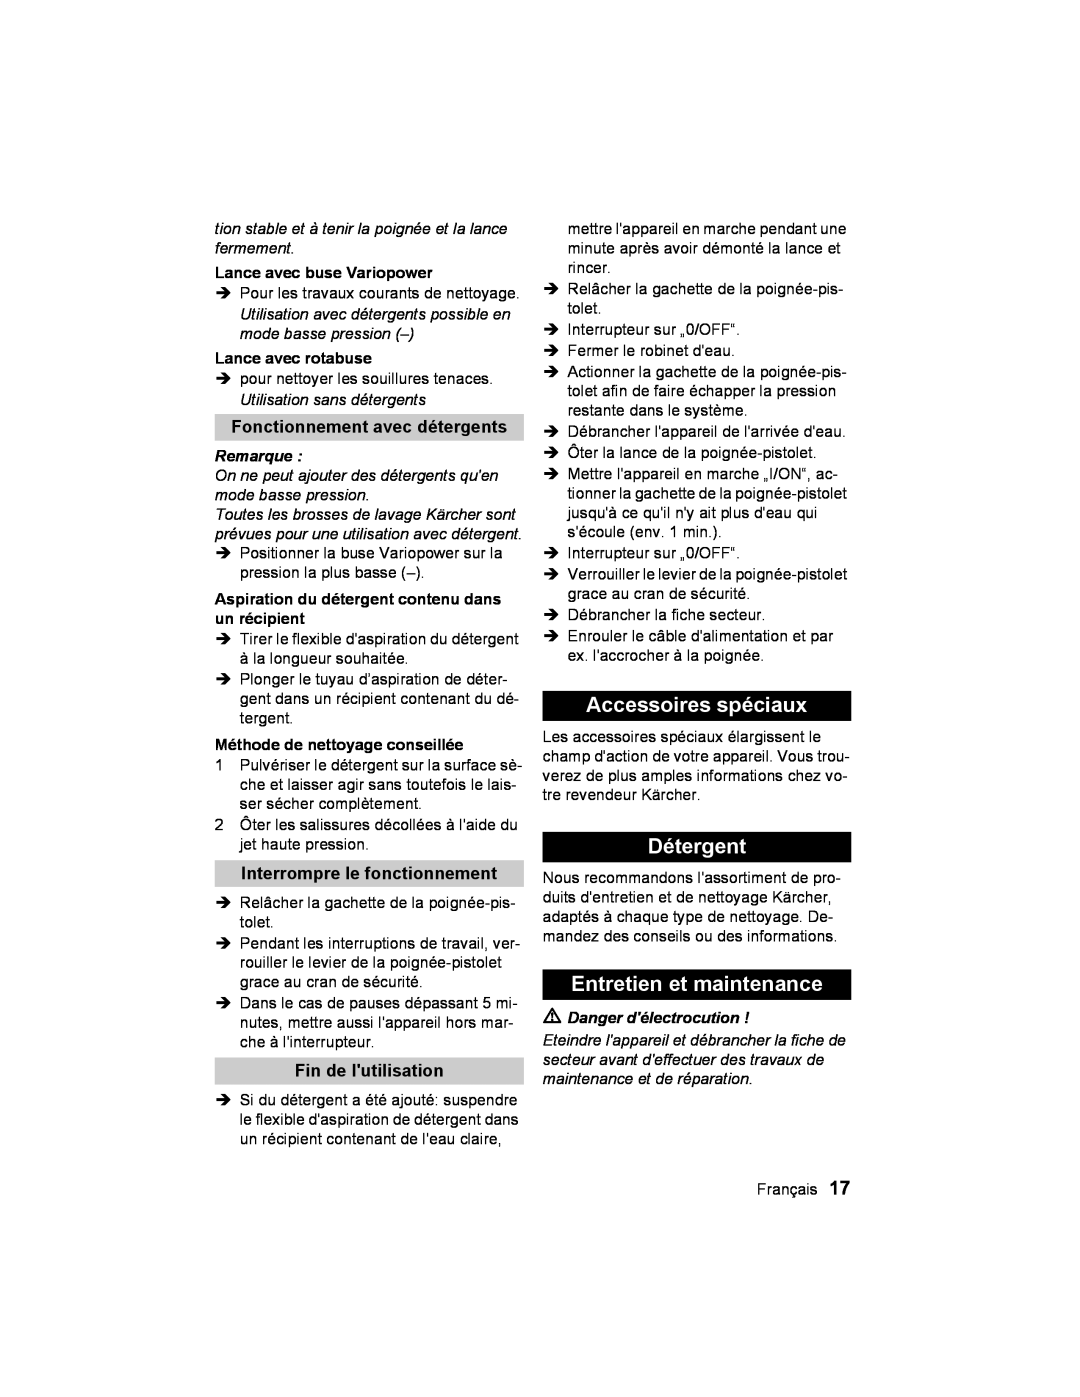 Karcher K2.93 manual Accessoires spéciaux, Détergent, Entretien et maintenance, Fonctionnement avec détergents, Remarque 